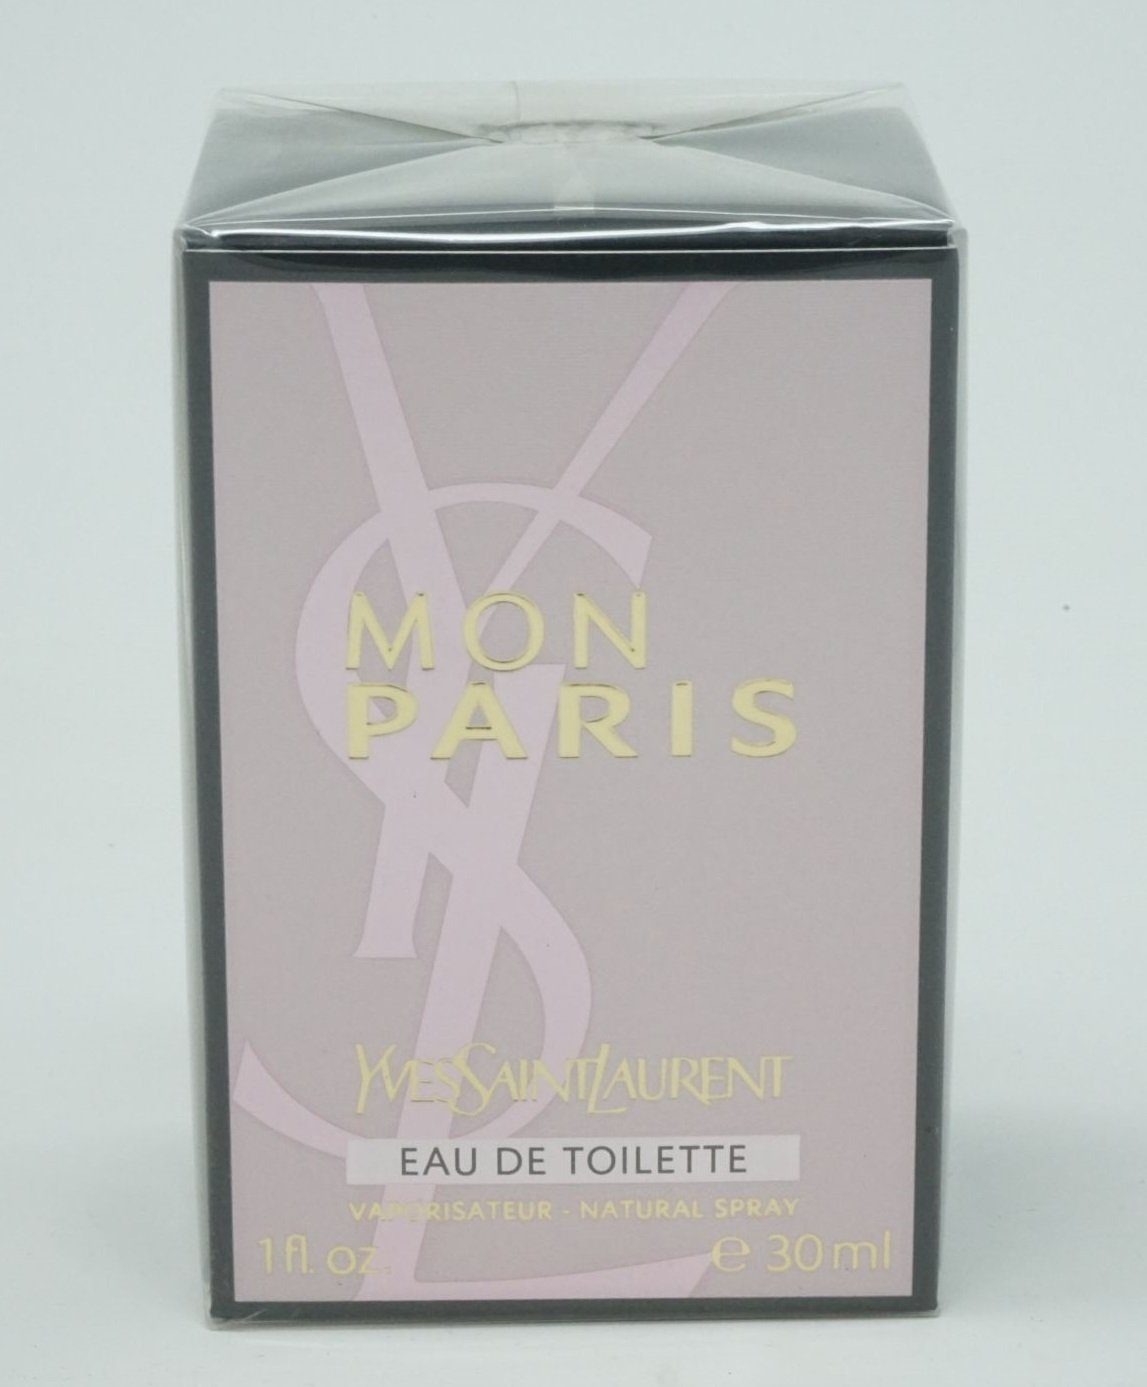 YVES SAINT LAURENT Eau de Toilette Yves Saint Laurent Mon Paris Eau de Toilette Spray 30 ml